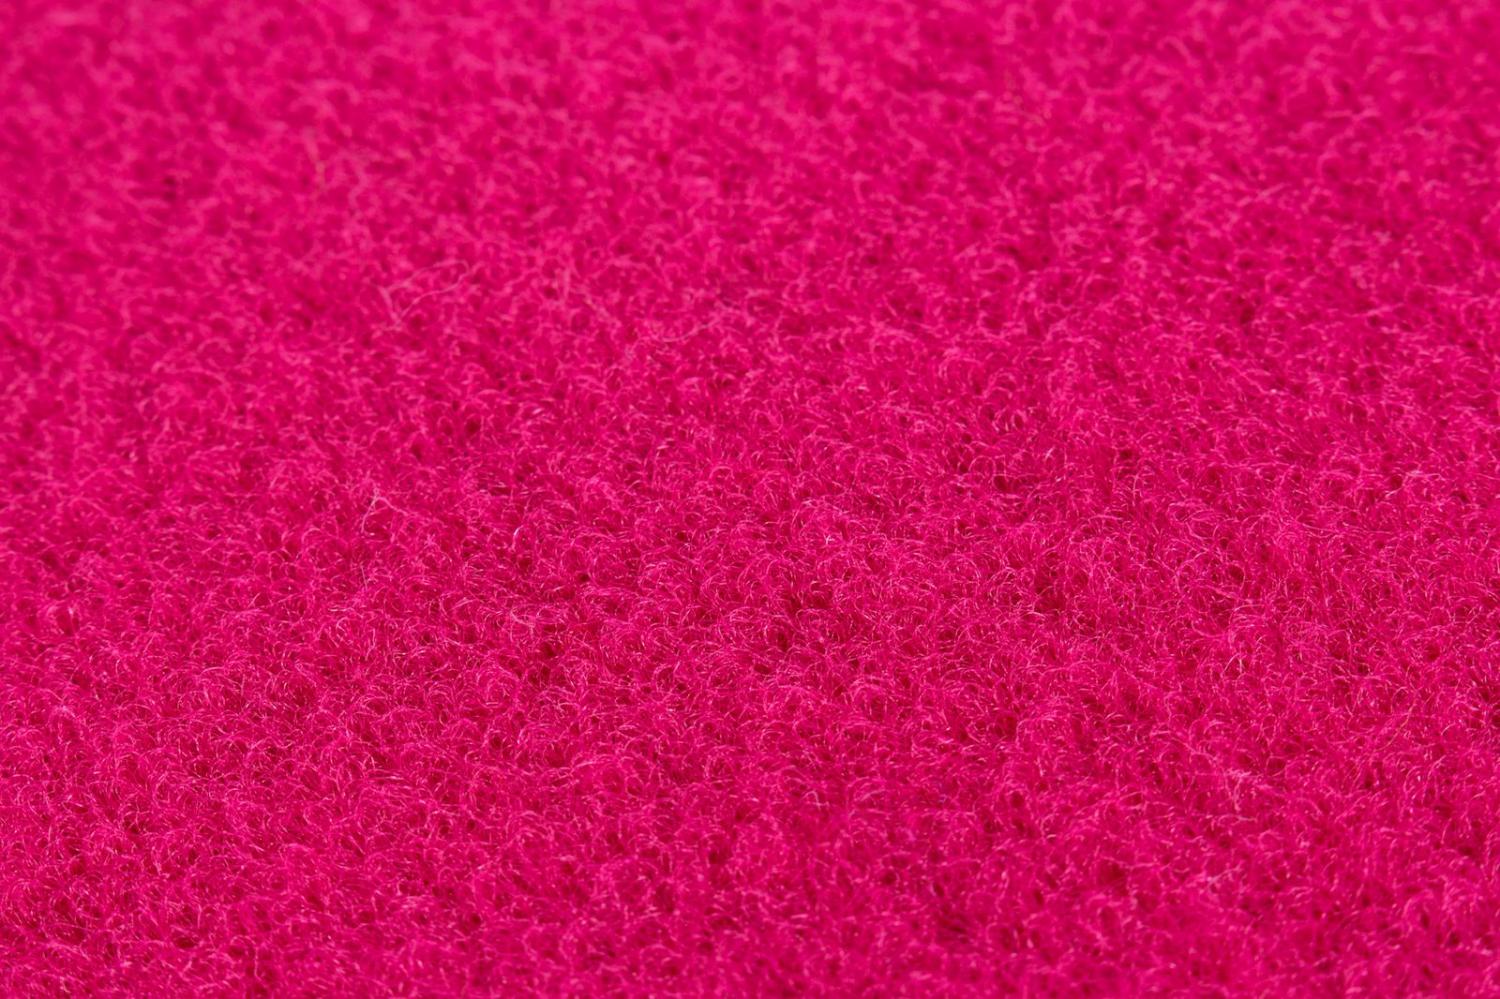 Teppich- Lifestyle als Rund und Rechteckig in drei verschiedene Farben Pink Weiß, 133 x 190 cm Bild 1